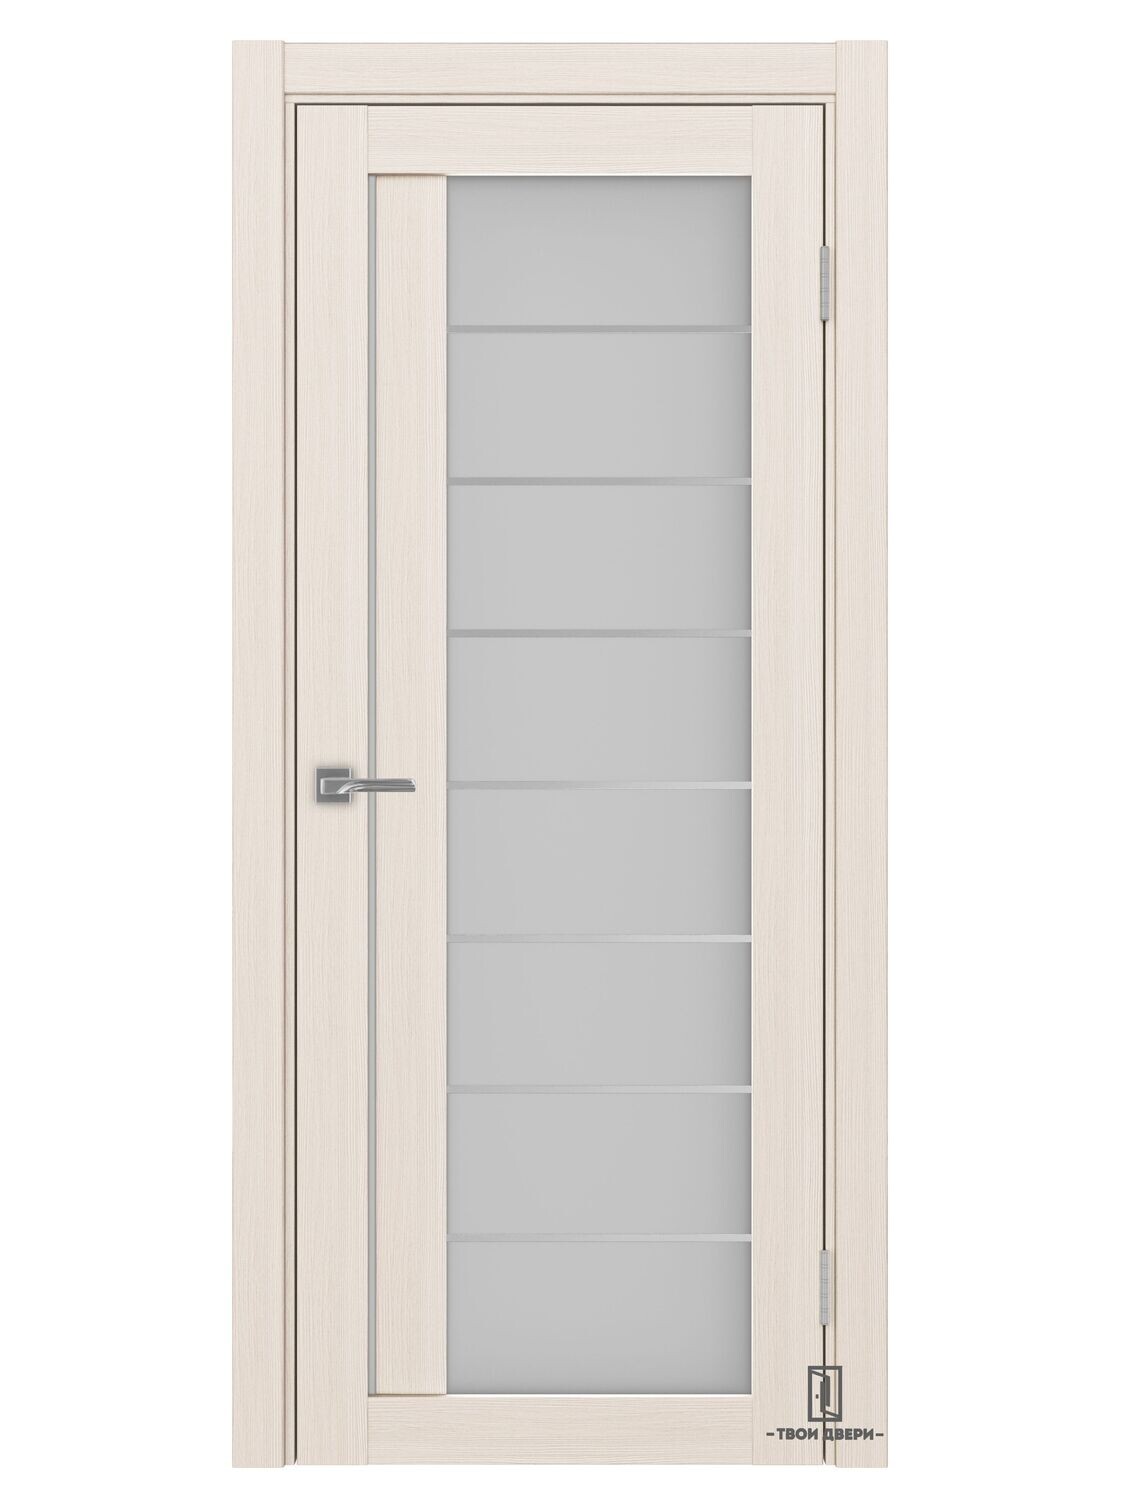 Дверь межкомнатная "Оптима Порте АСС 524" молдинги, ясень перламутровый